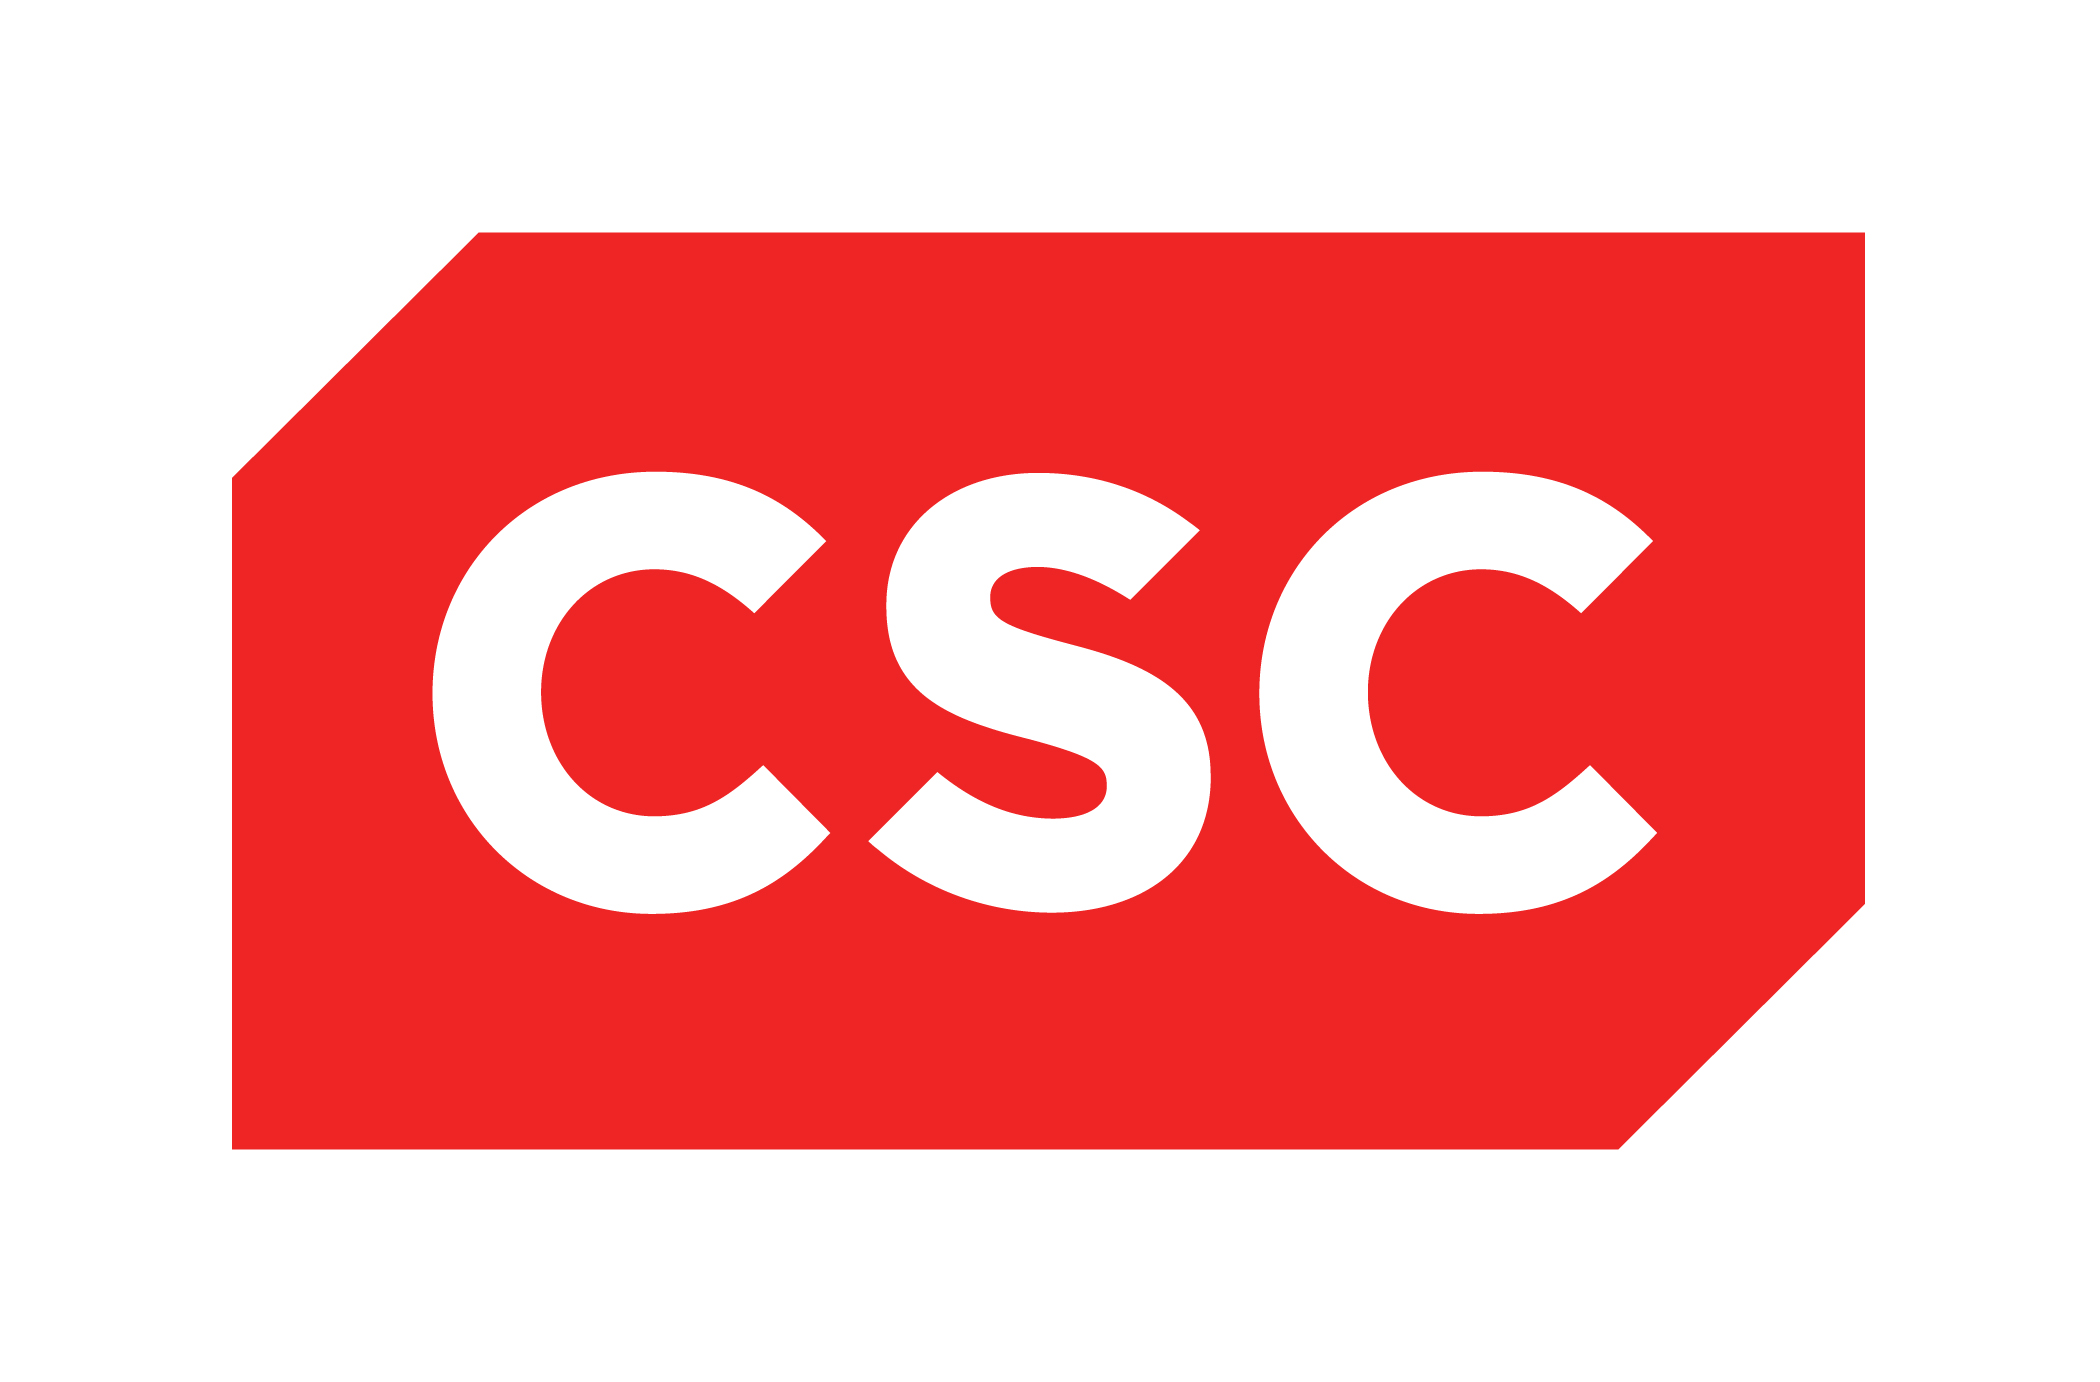 CSC Logo / Computers / Logonoid.com